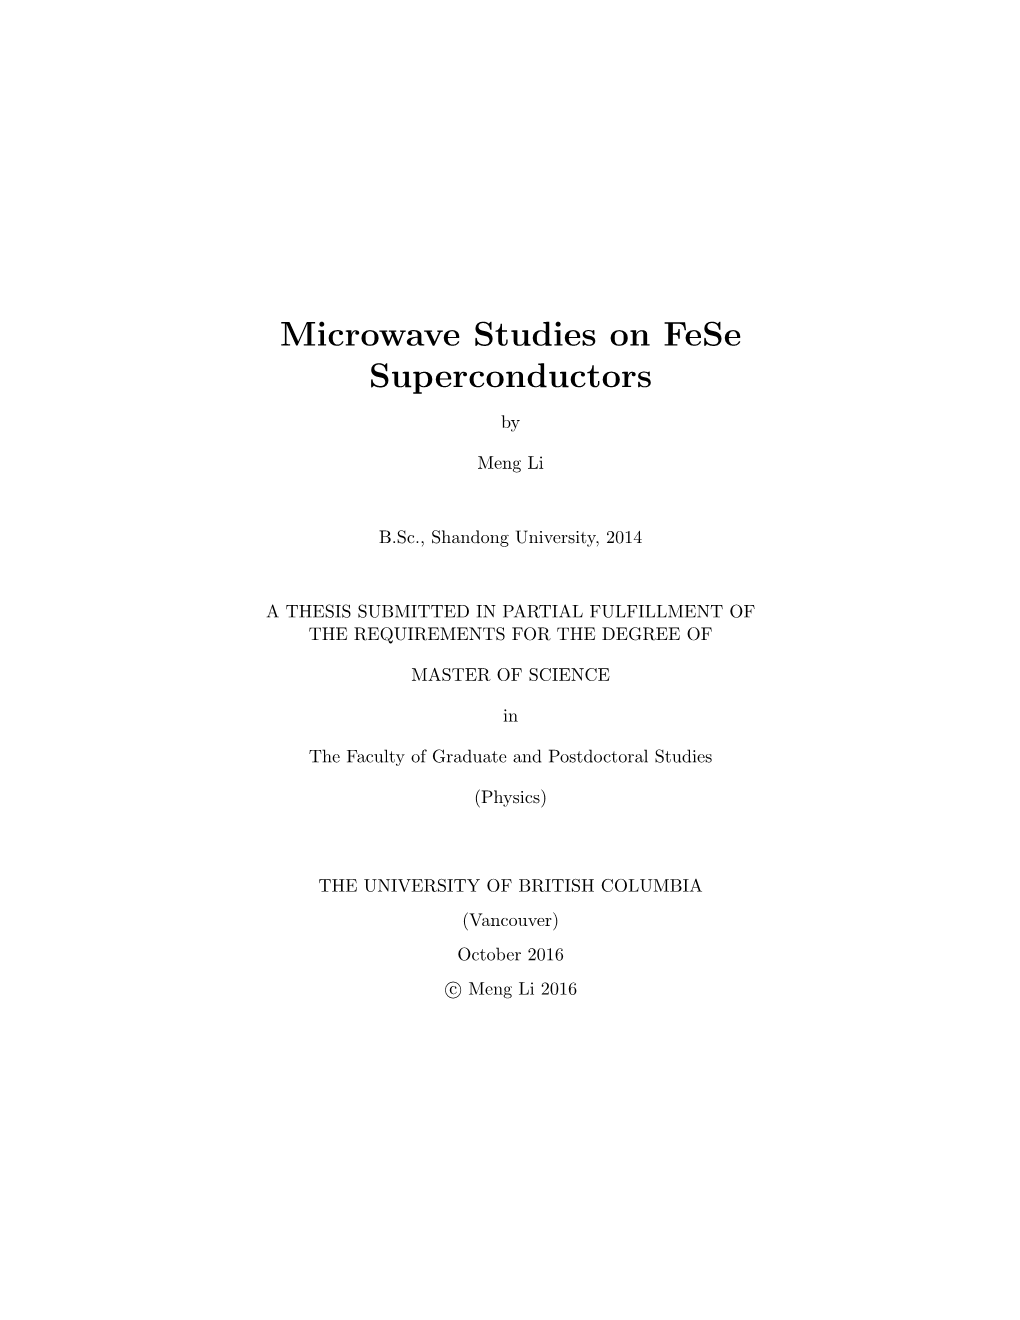 Microwave Studies on Fese Superconductors